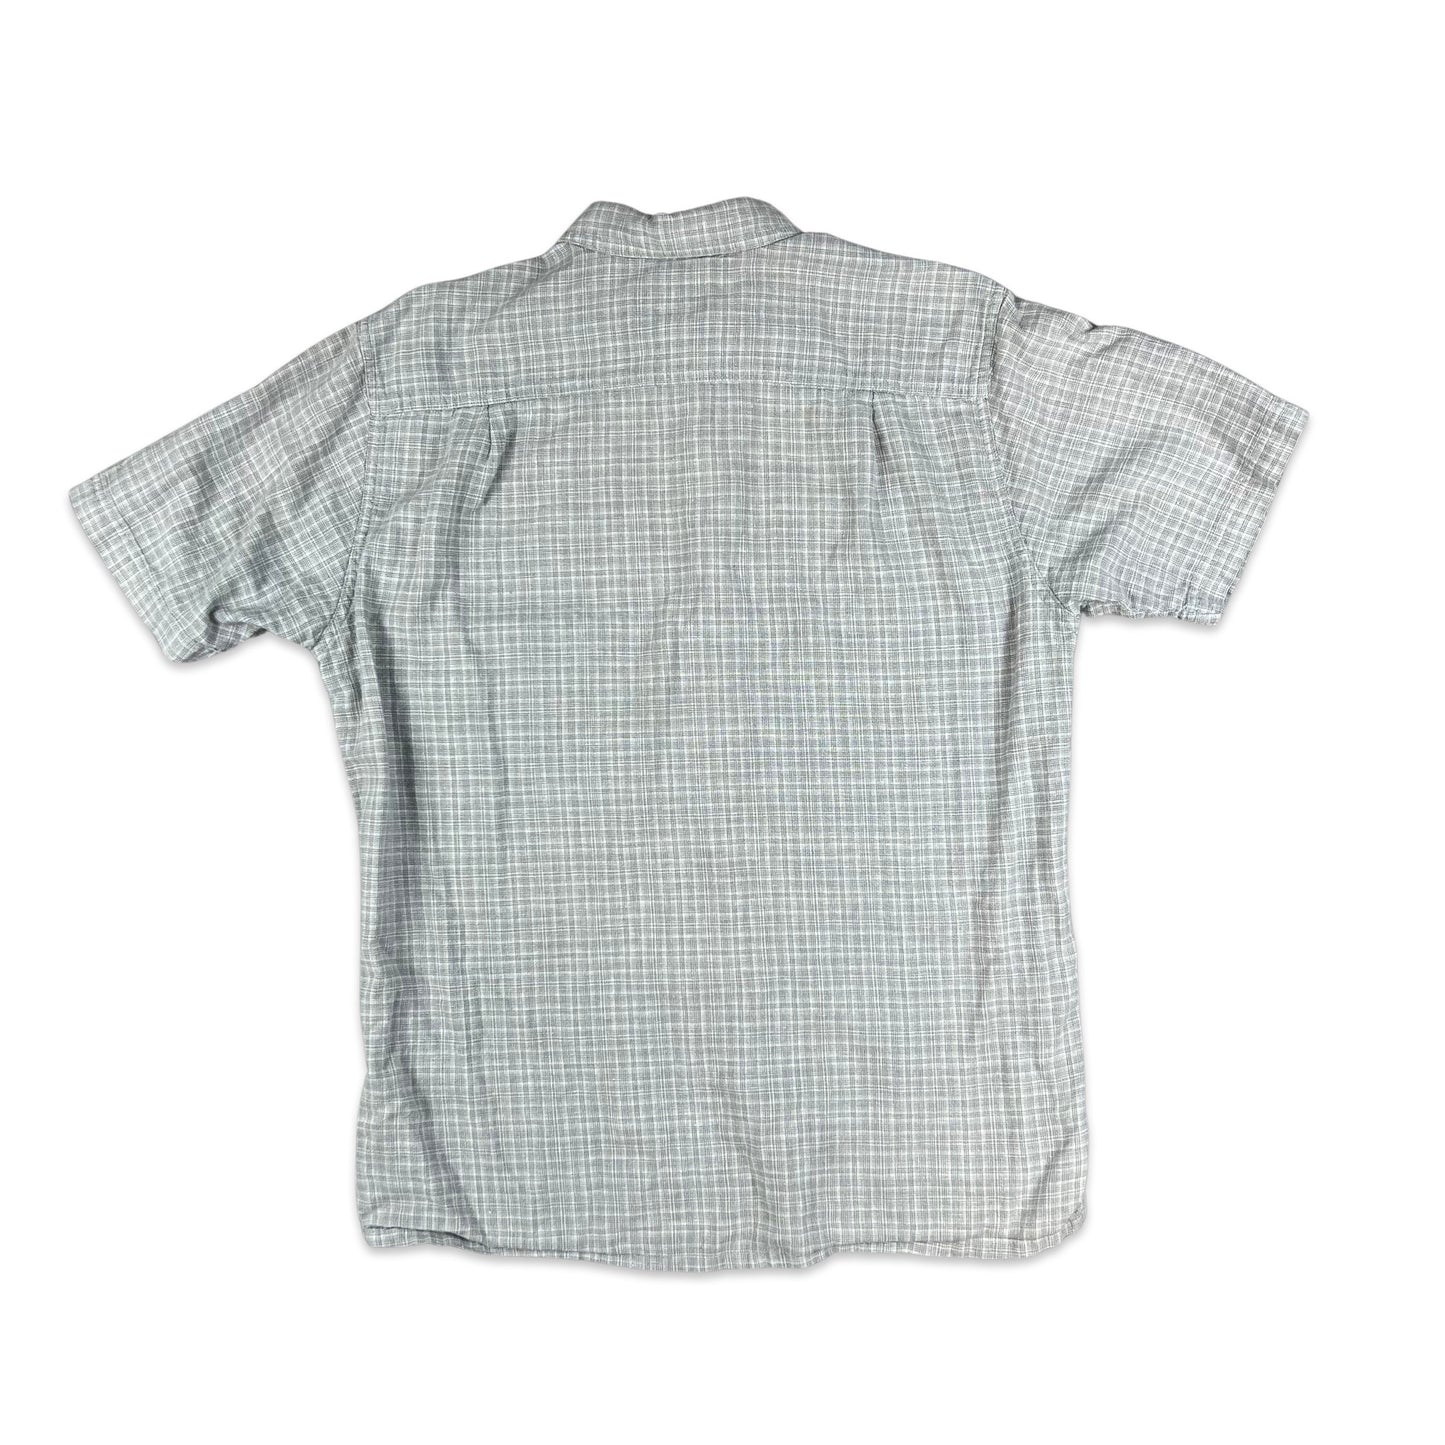 00s Grey Patagonia Check Shirt S M